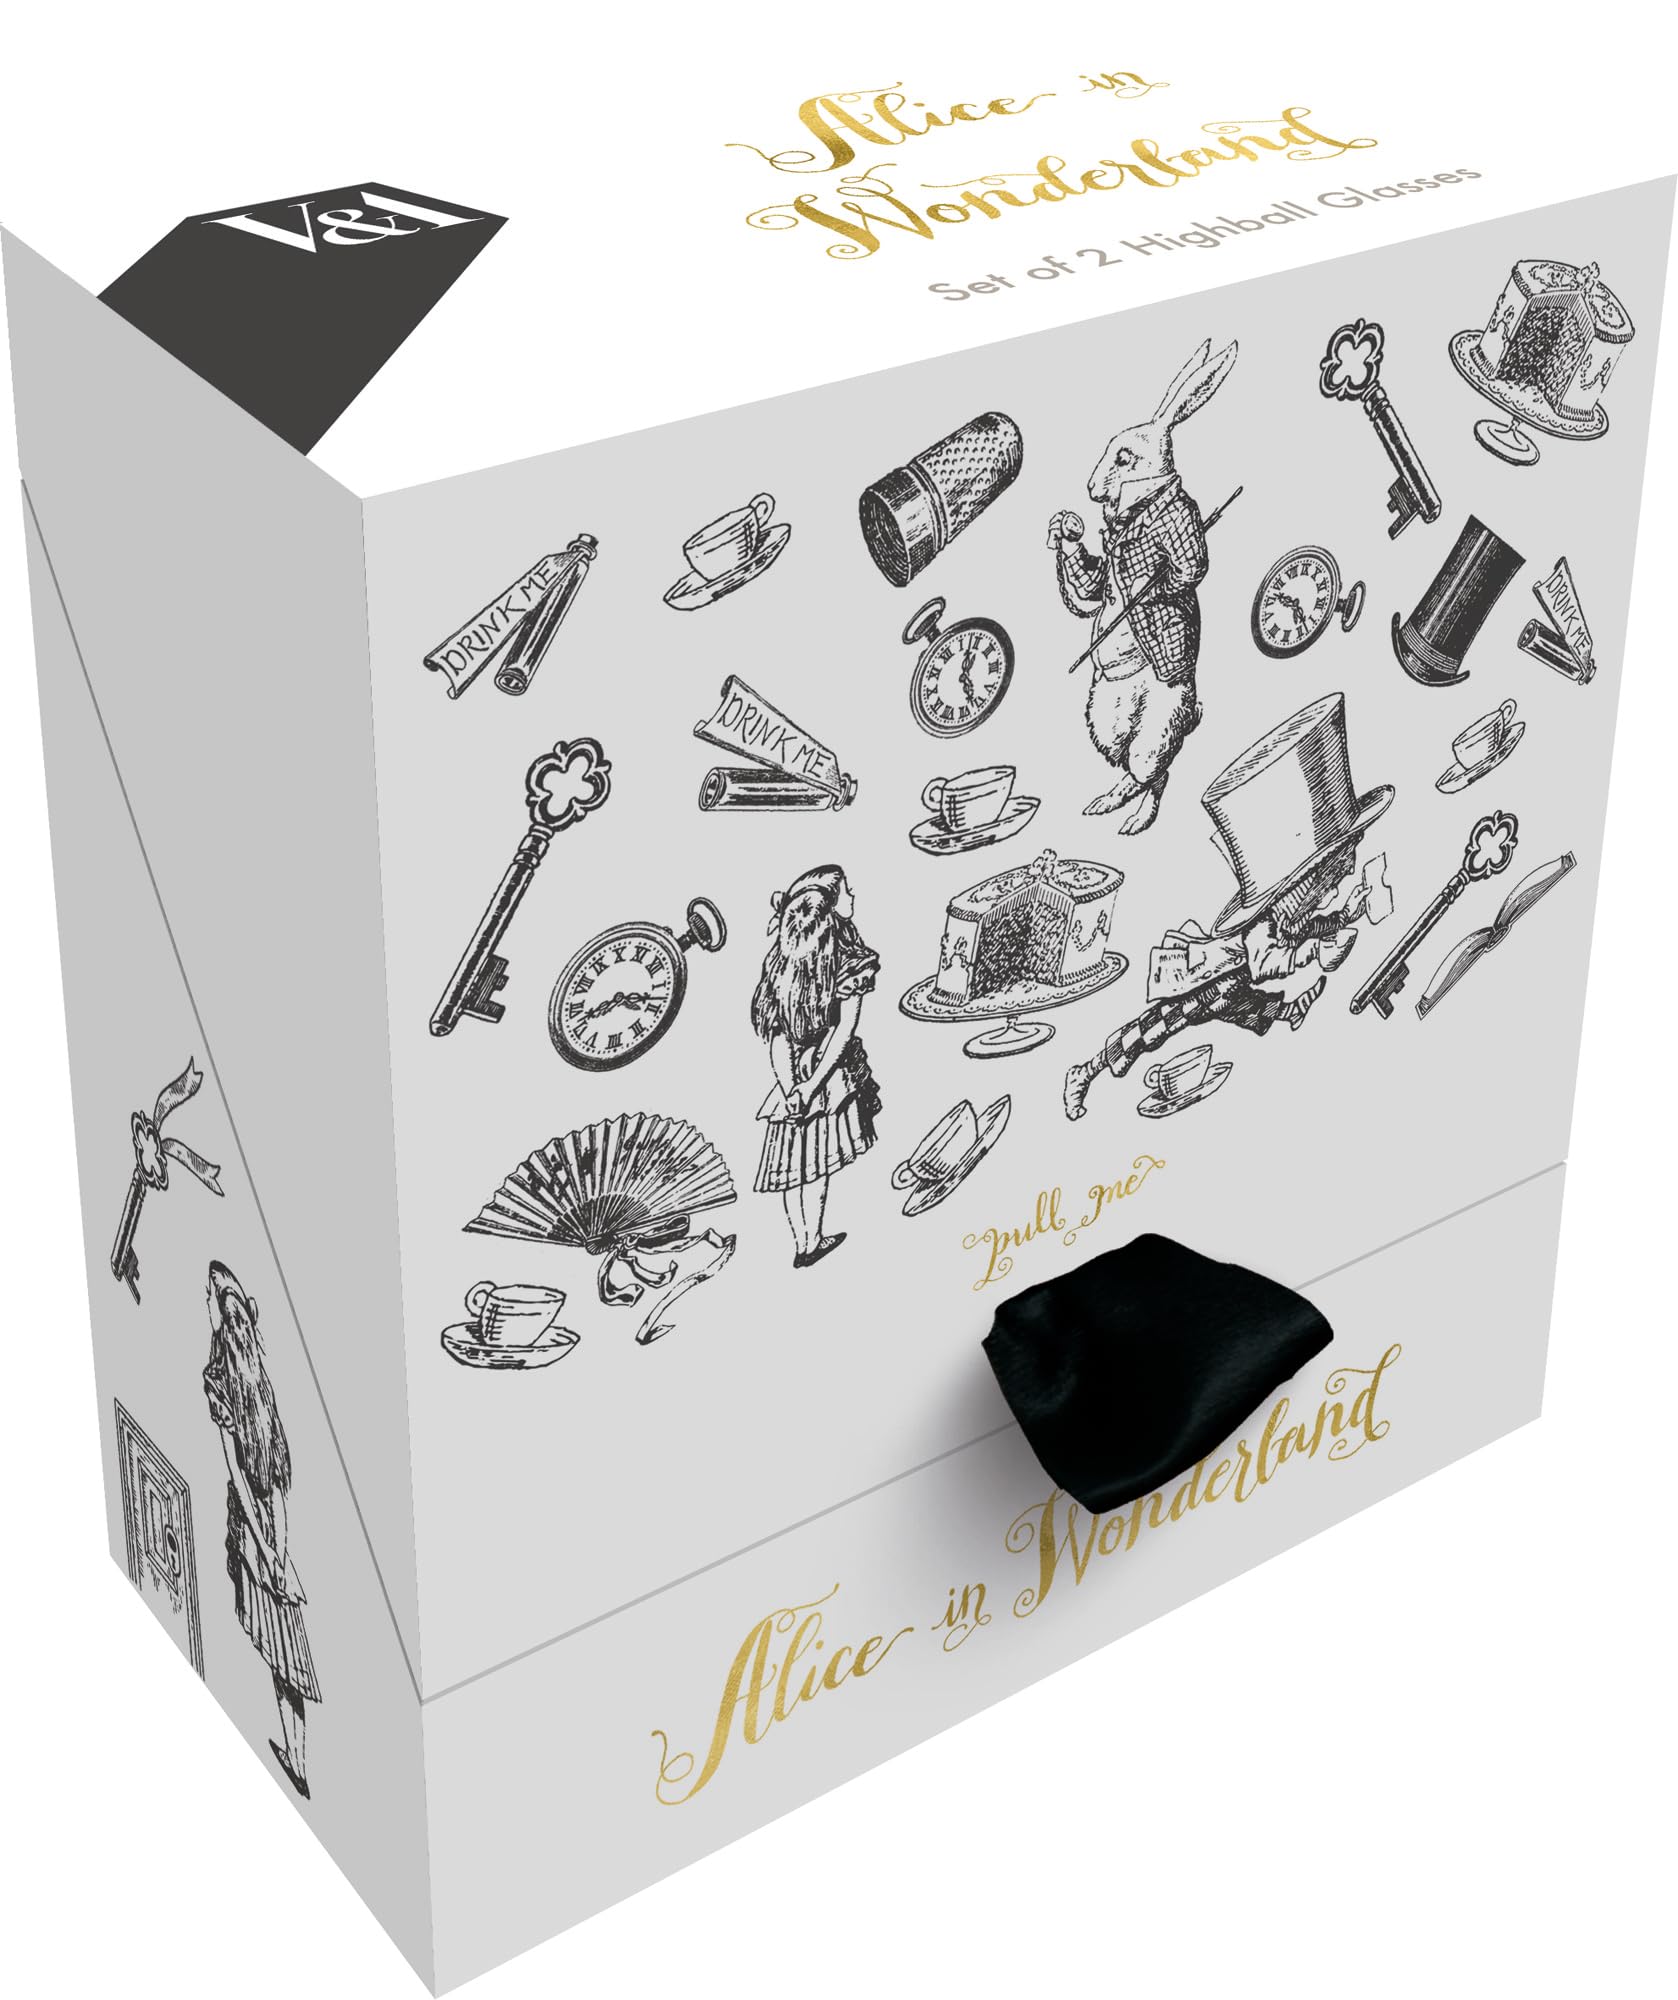 V&A Alice in Wonderland Highball Glasses in Gift Box, Glass, 330 ml - (Set of 2)